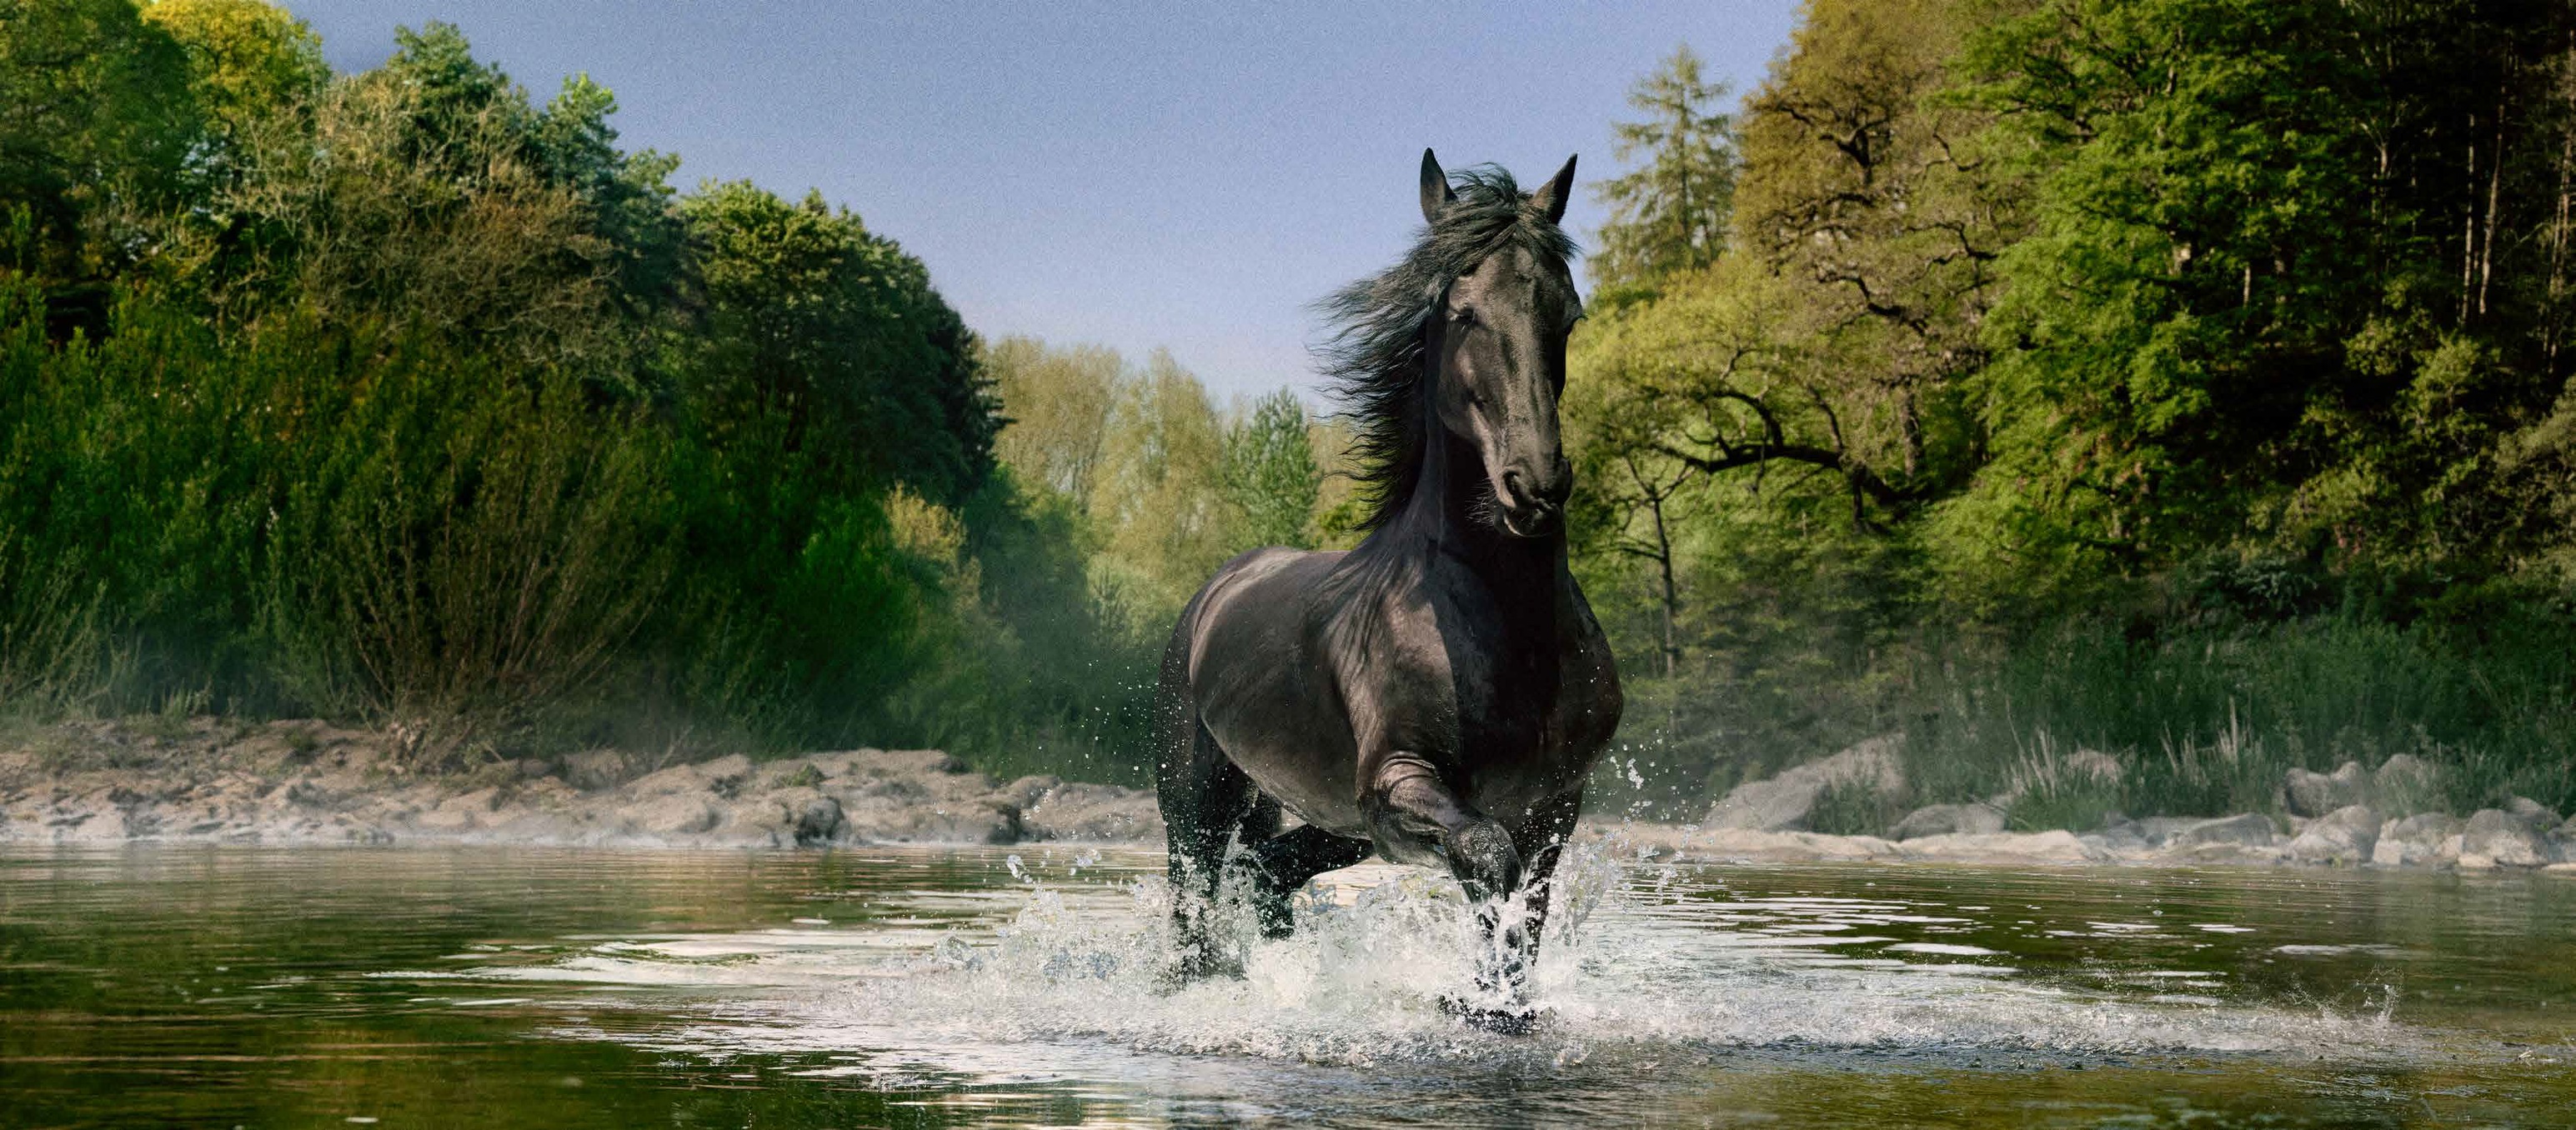 Lloyds Bank black horse image